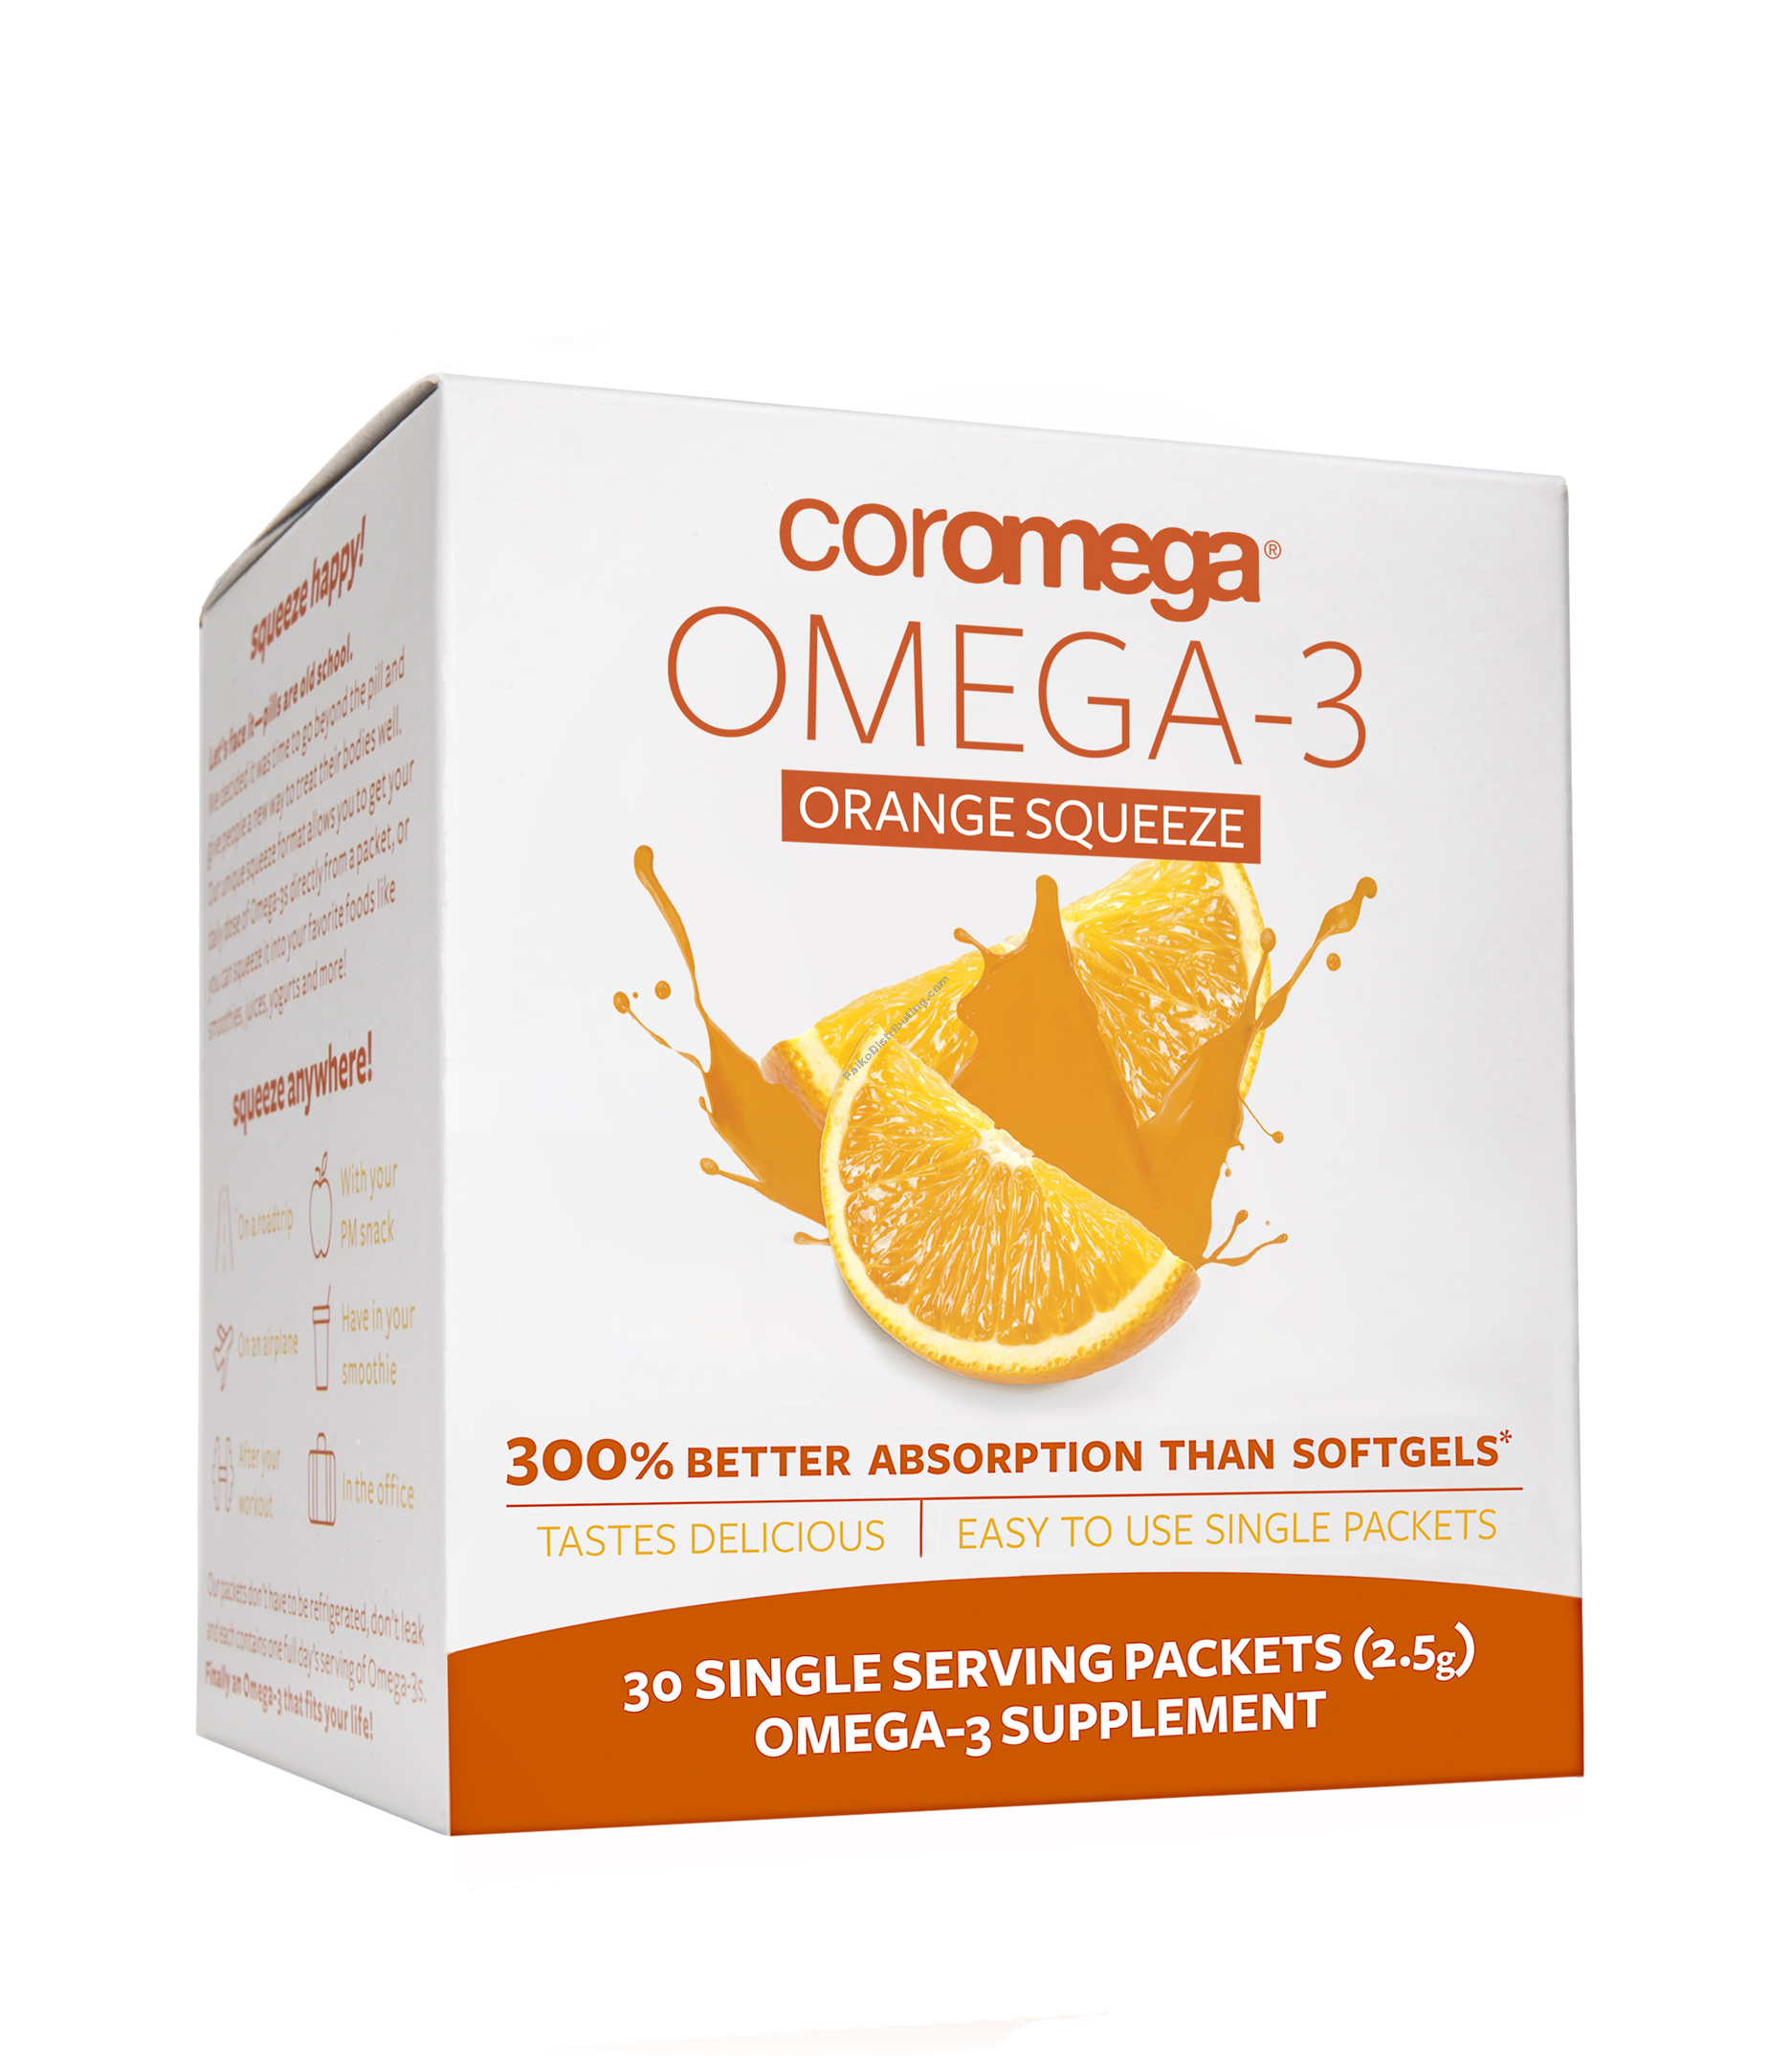 Product Image: Orange Omega 3 Squeeze